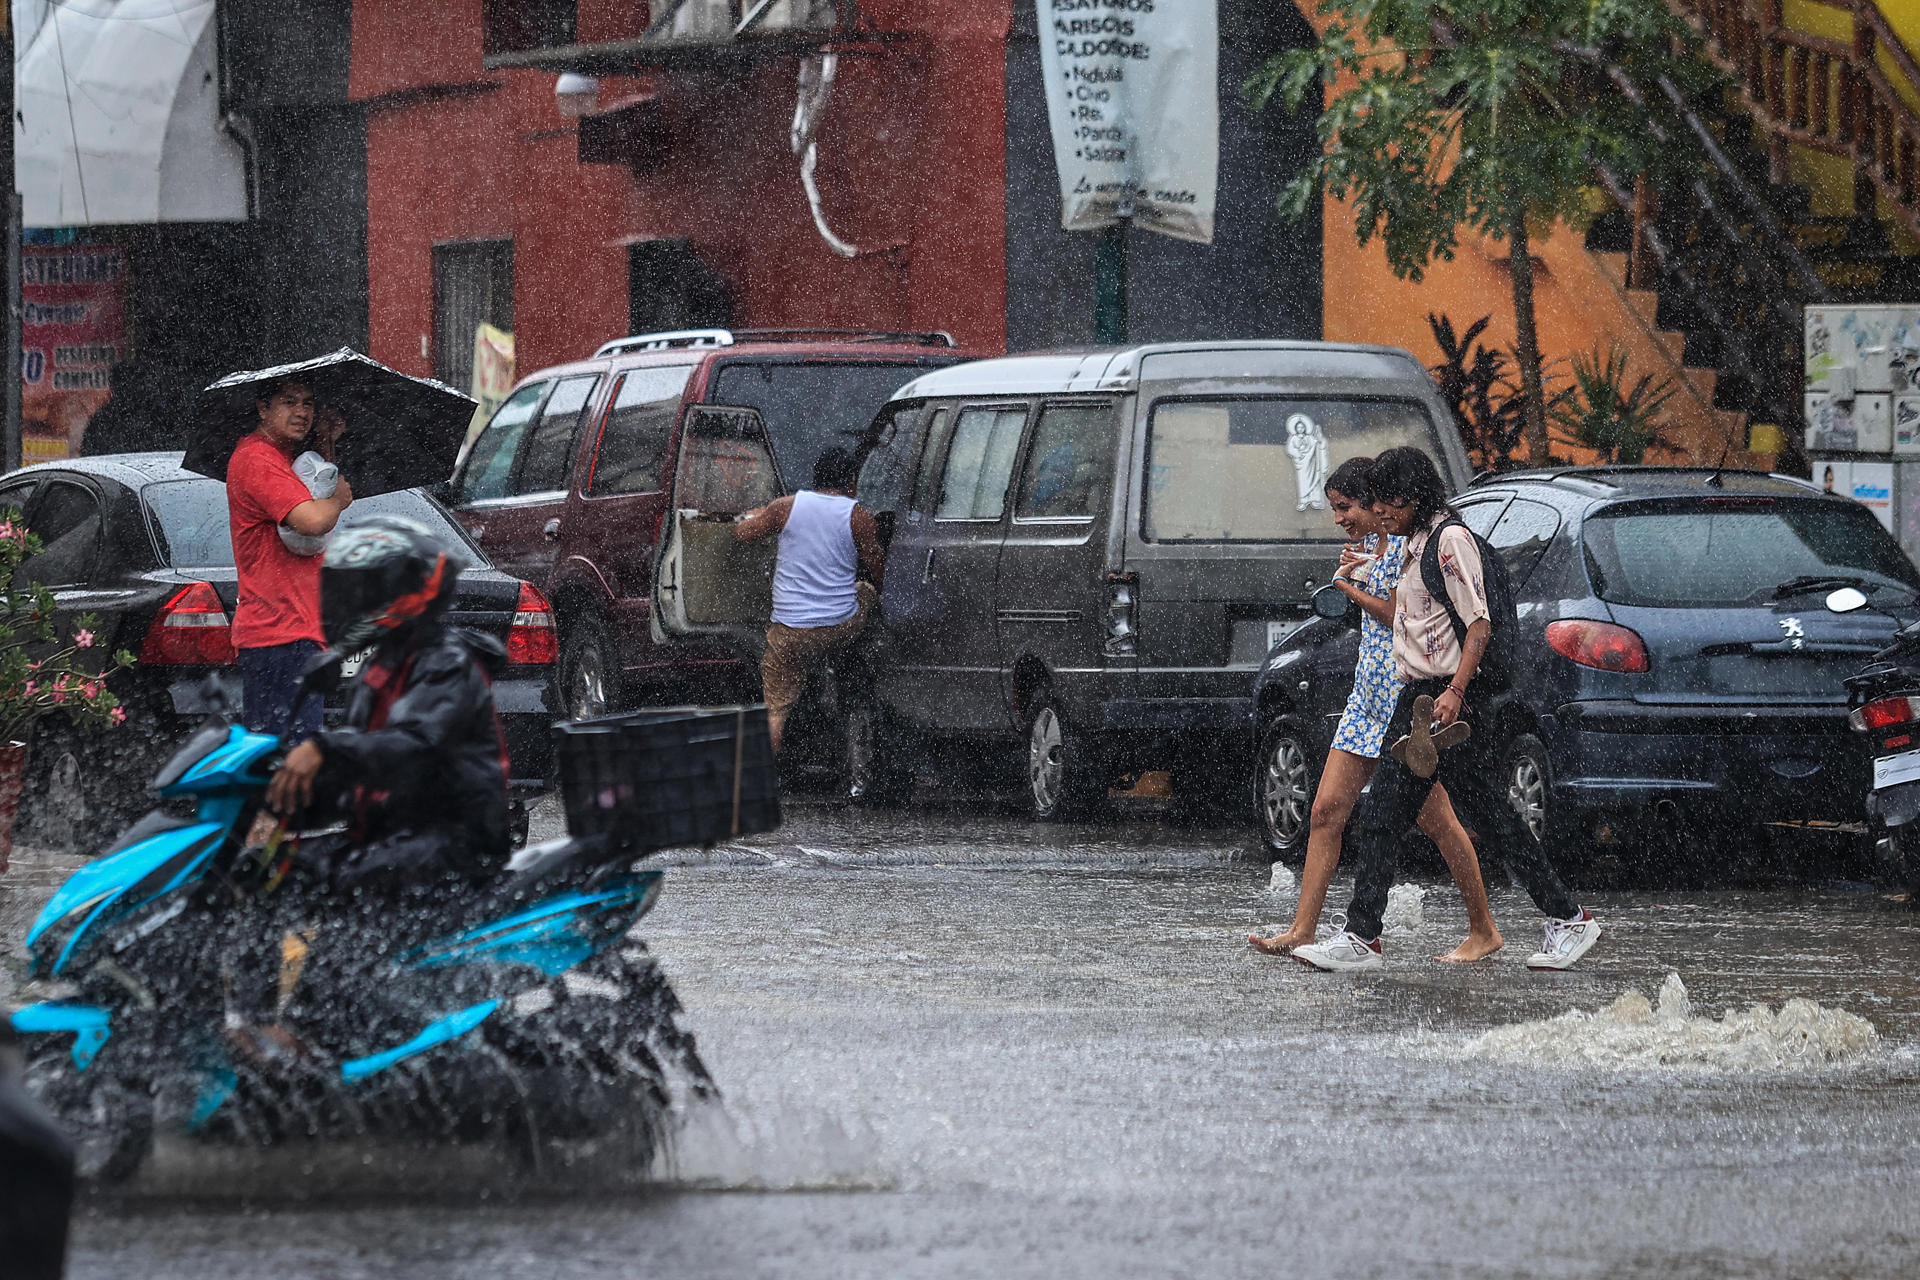 Imagen de archivo de personas que caminan por una calle encharcada debido a las fuertes lluvias en Guadalajara, Jalisco. EFE/David Guzmán